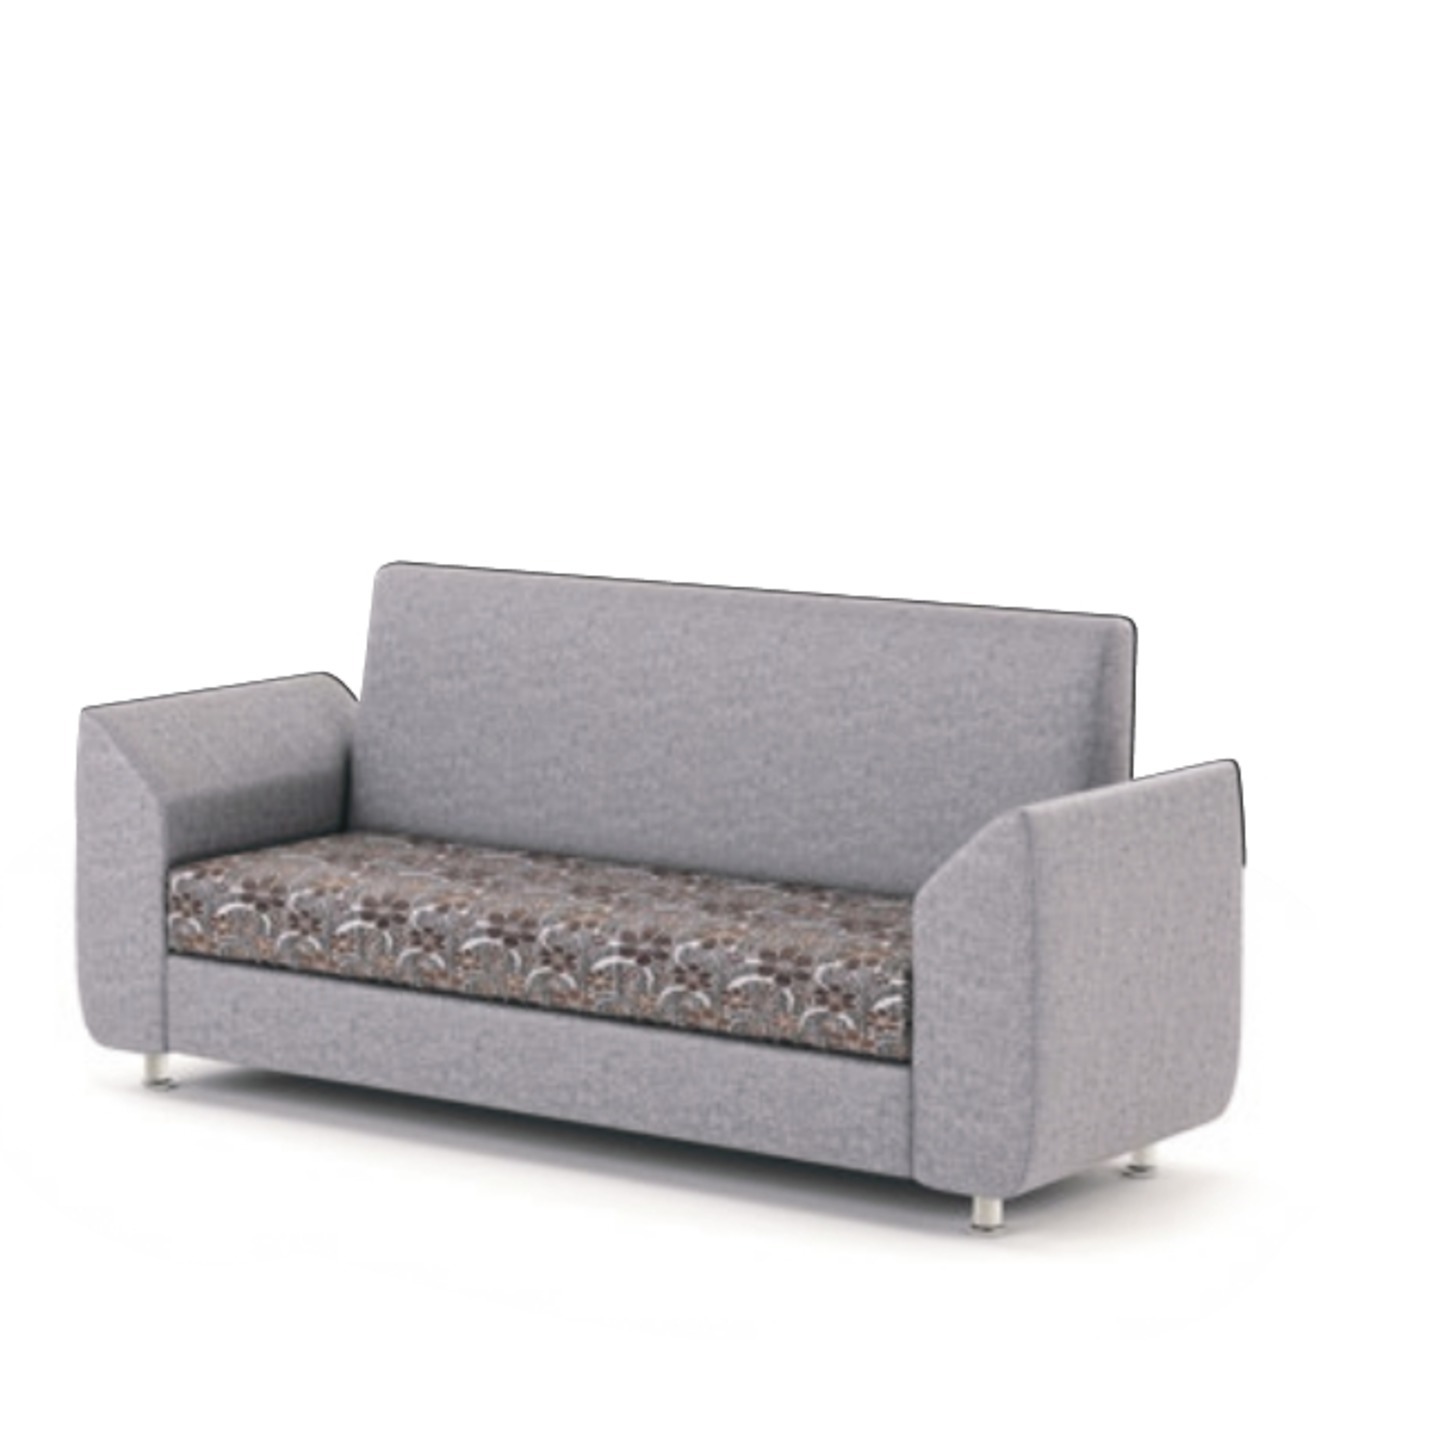 RLF Sofa Set 3+2 Economy DD-540 In Grey Colour